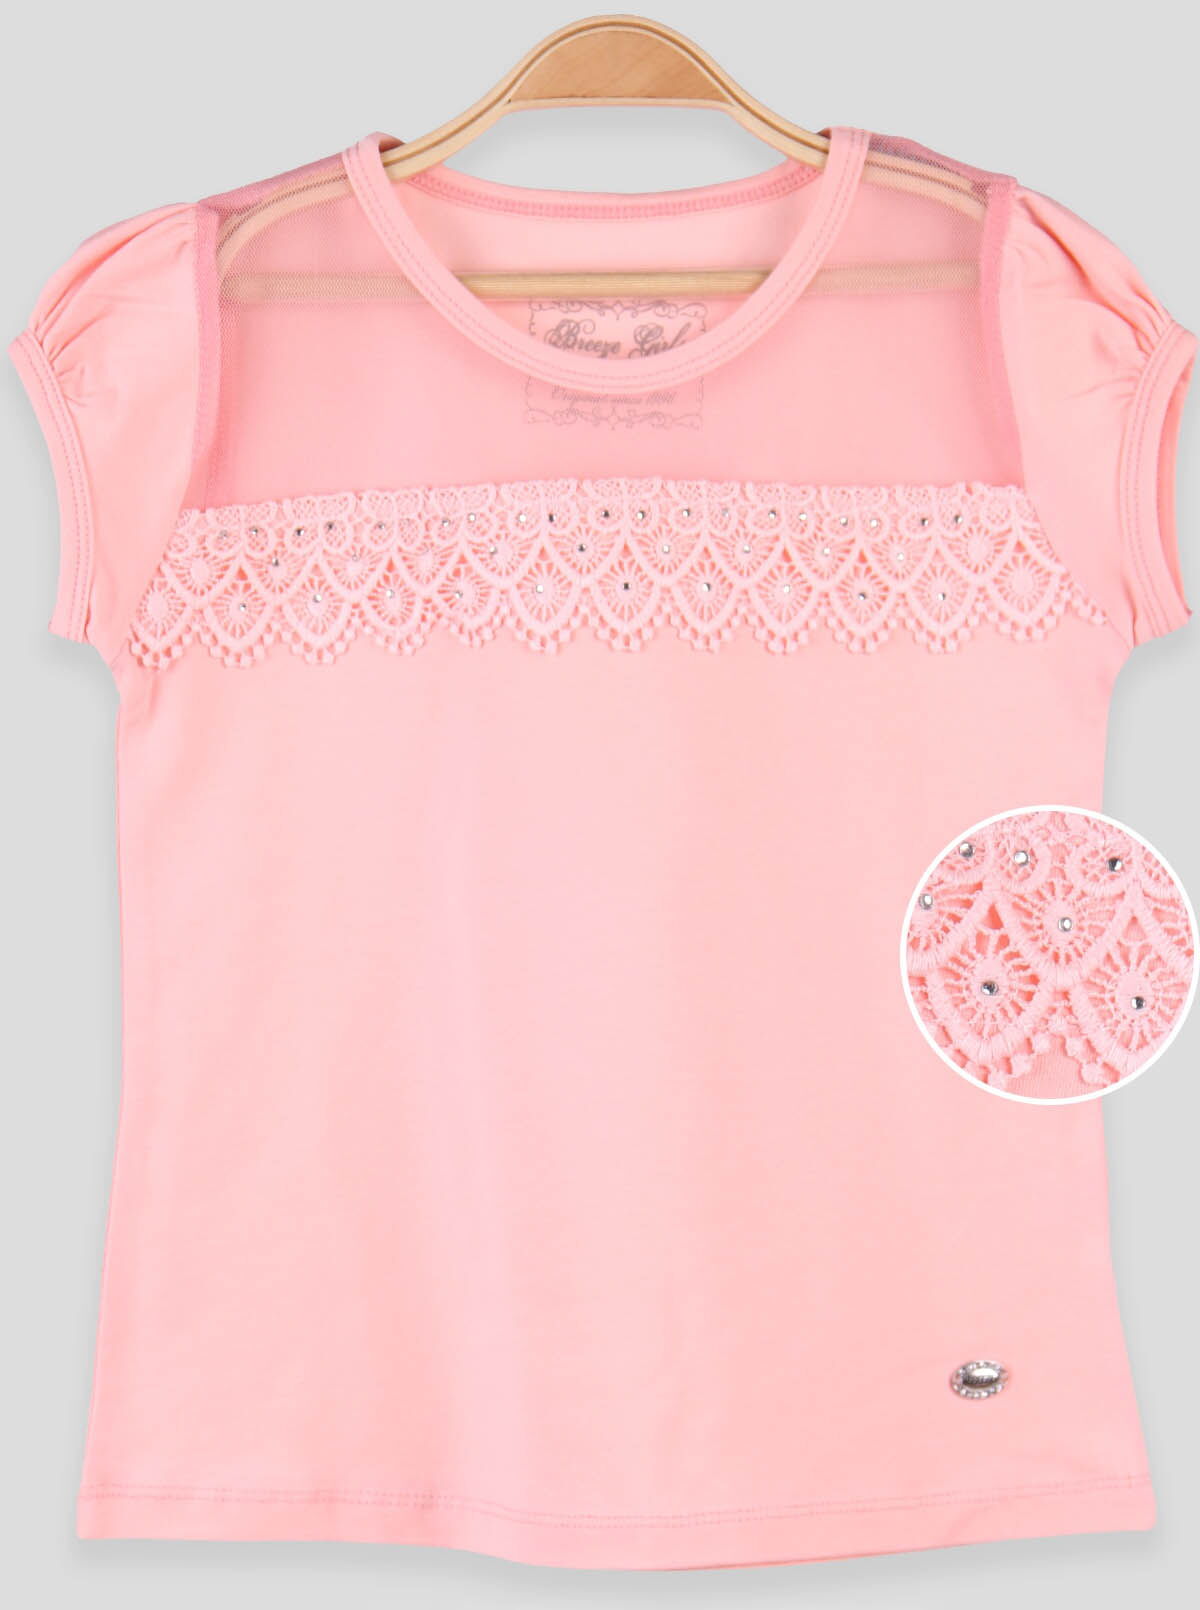 Трикотажная блузка для девочки Breeze персиковая 14516 - цена